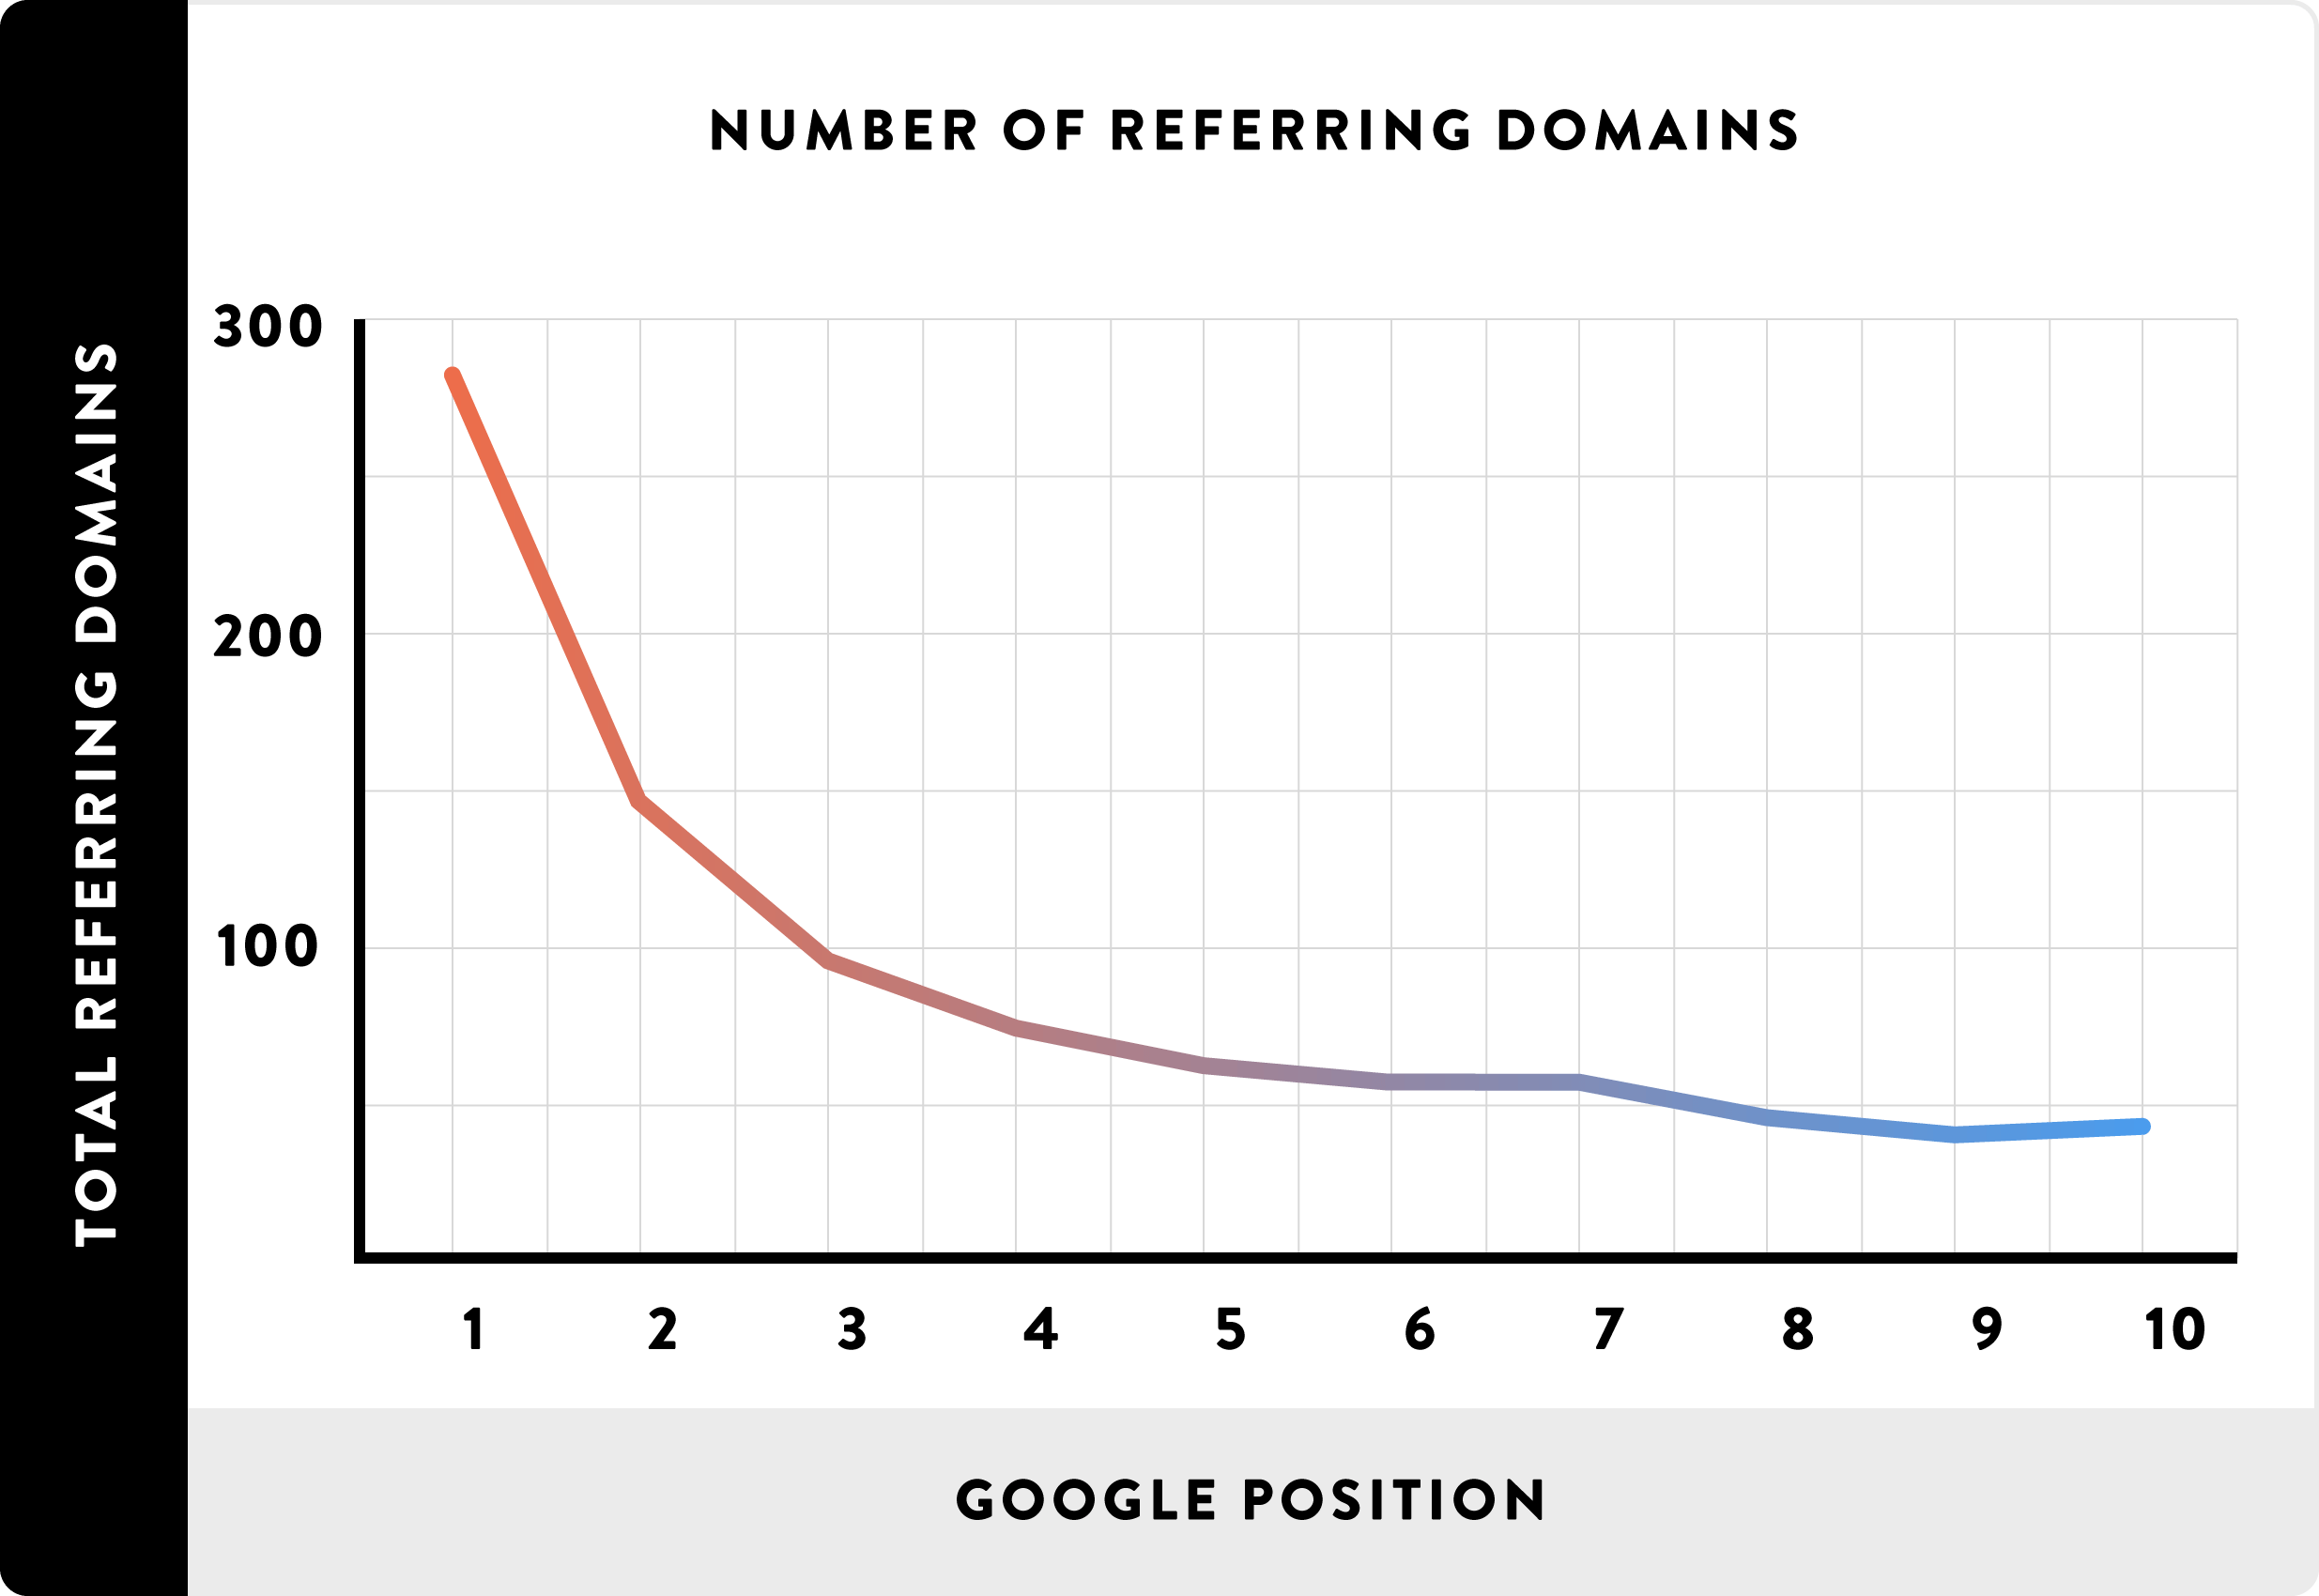 推荐域名数量与Google排名之间的相关性